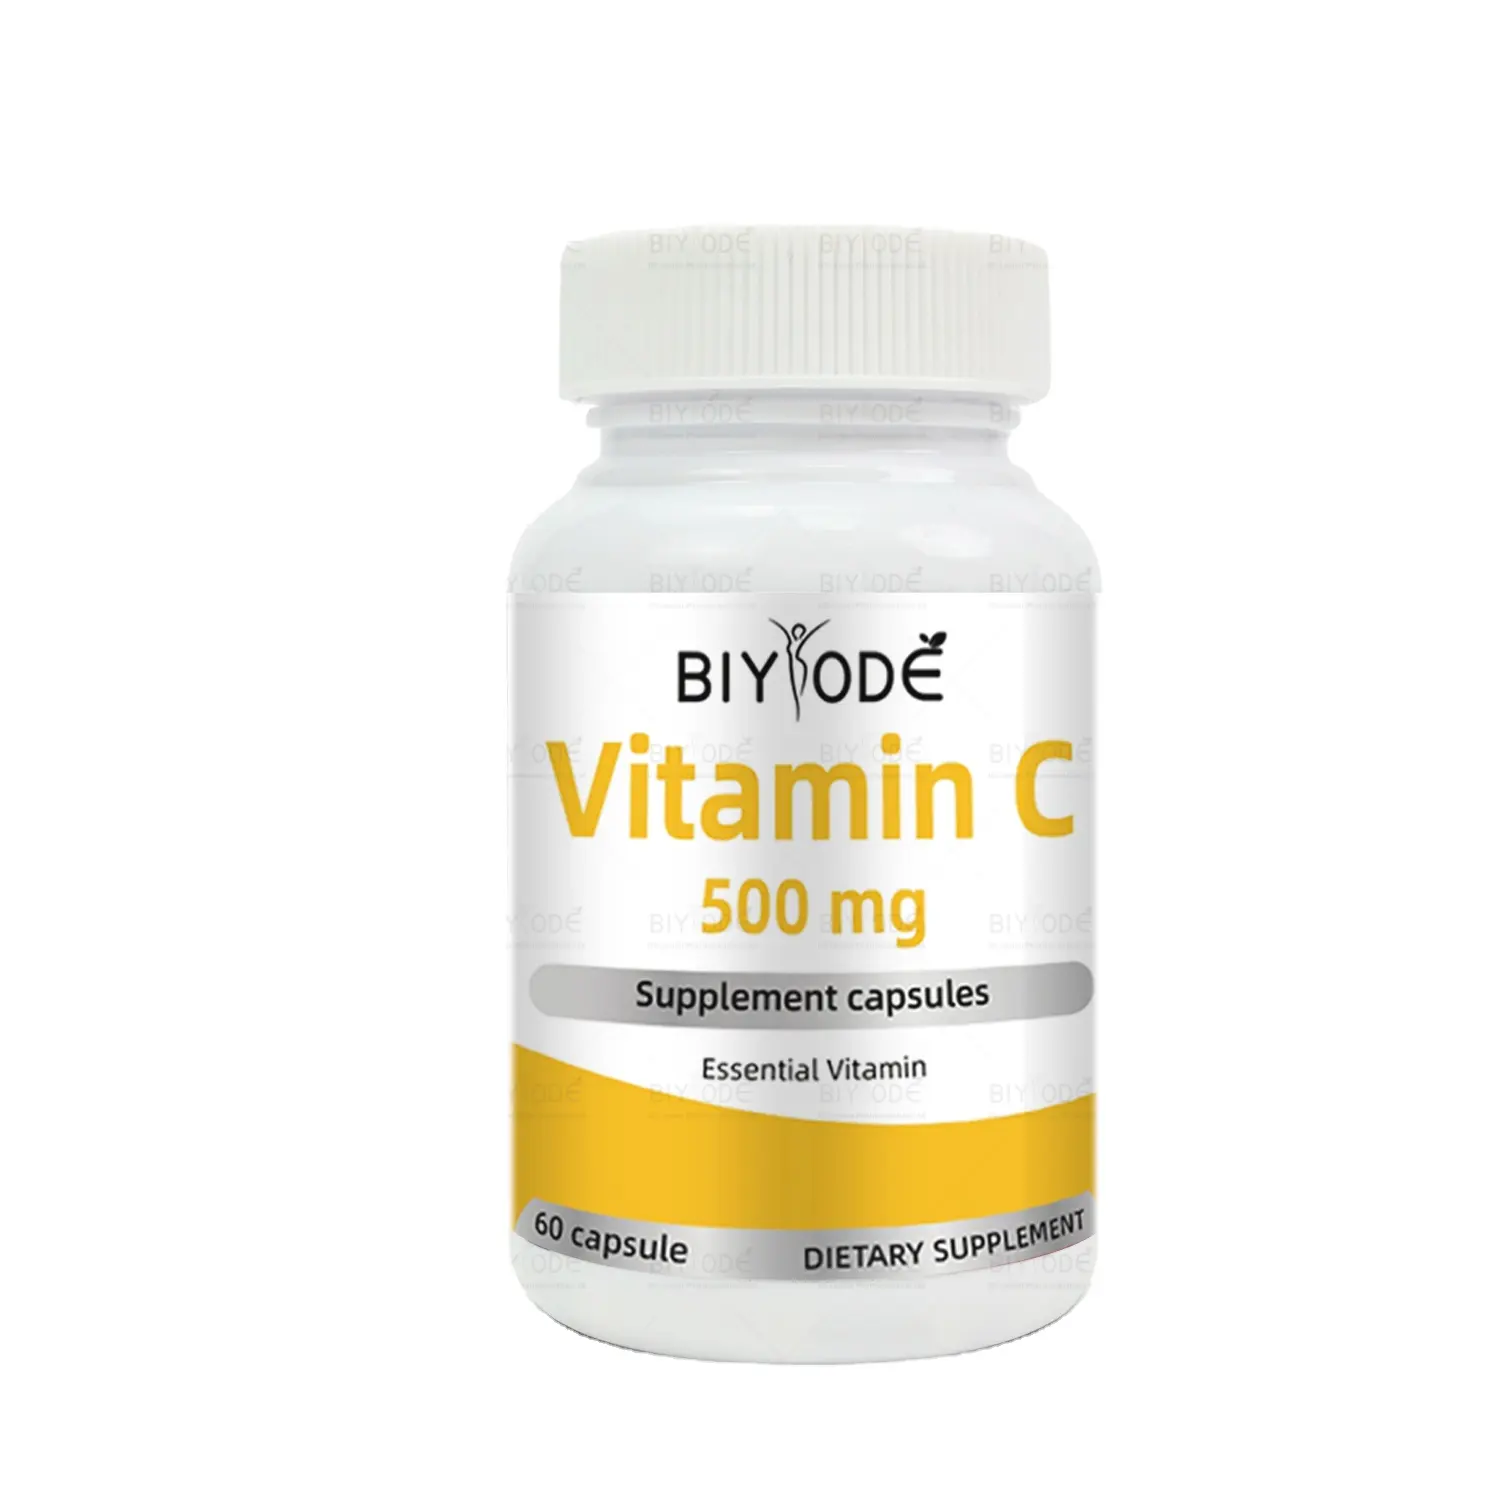 BIYODE, materia prima de alta calidad, multivitamina C para la piel y el cuidado de la salud, suplemento esencial de vitamina, cápsulas de píldora de 500 mg